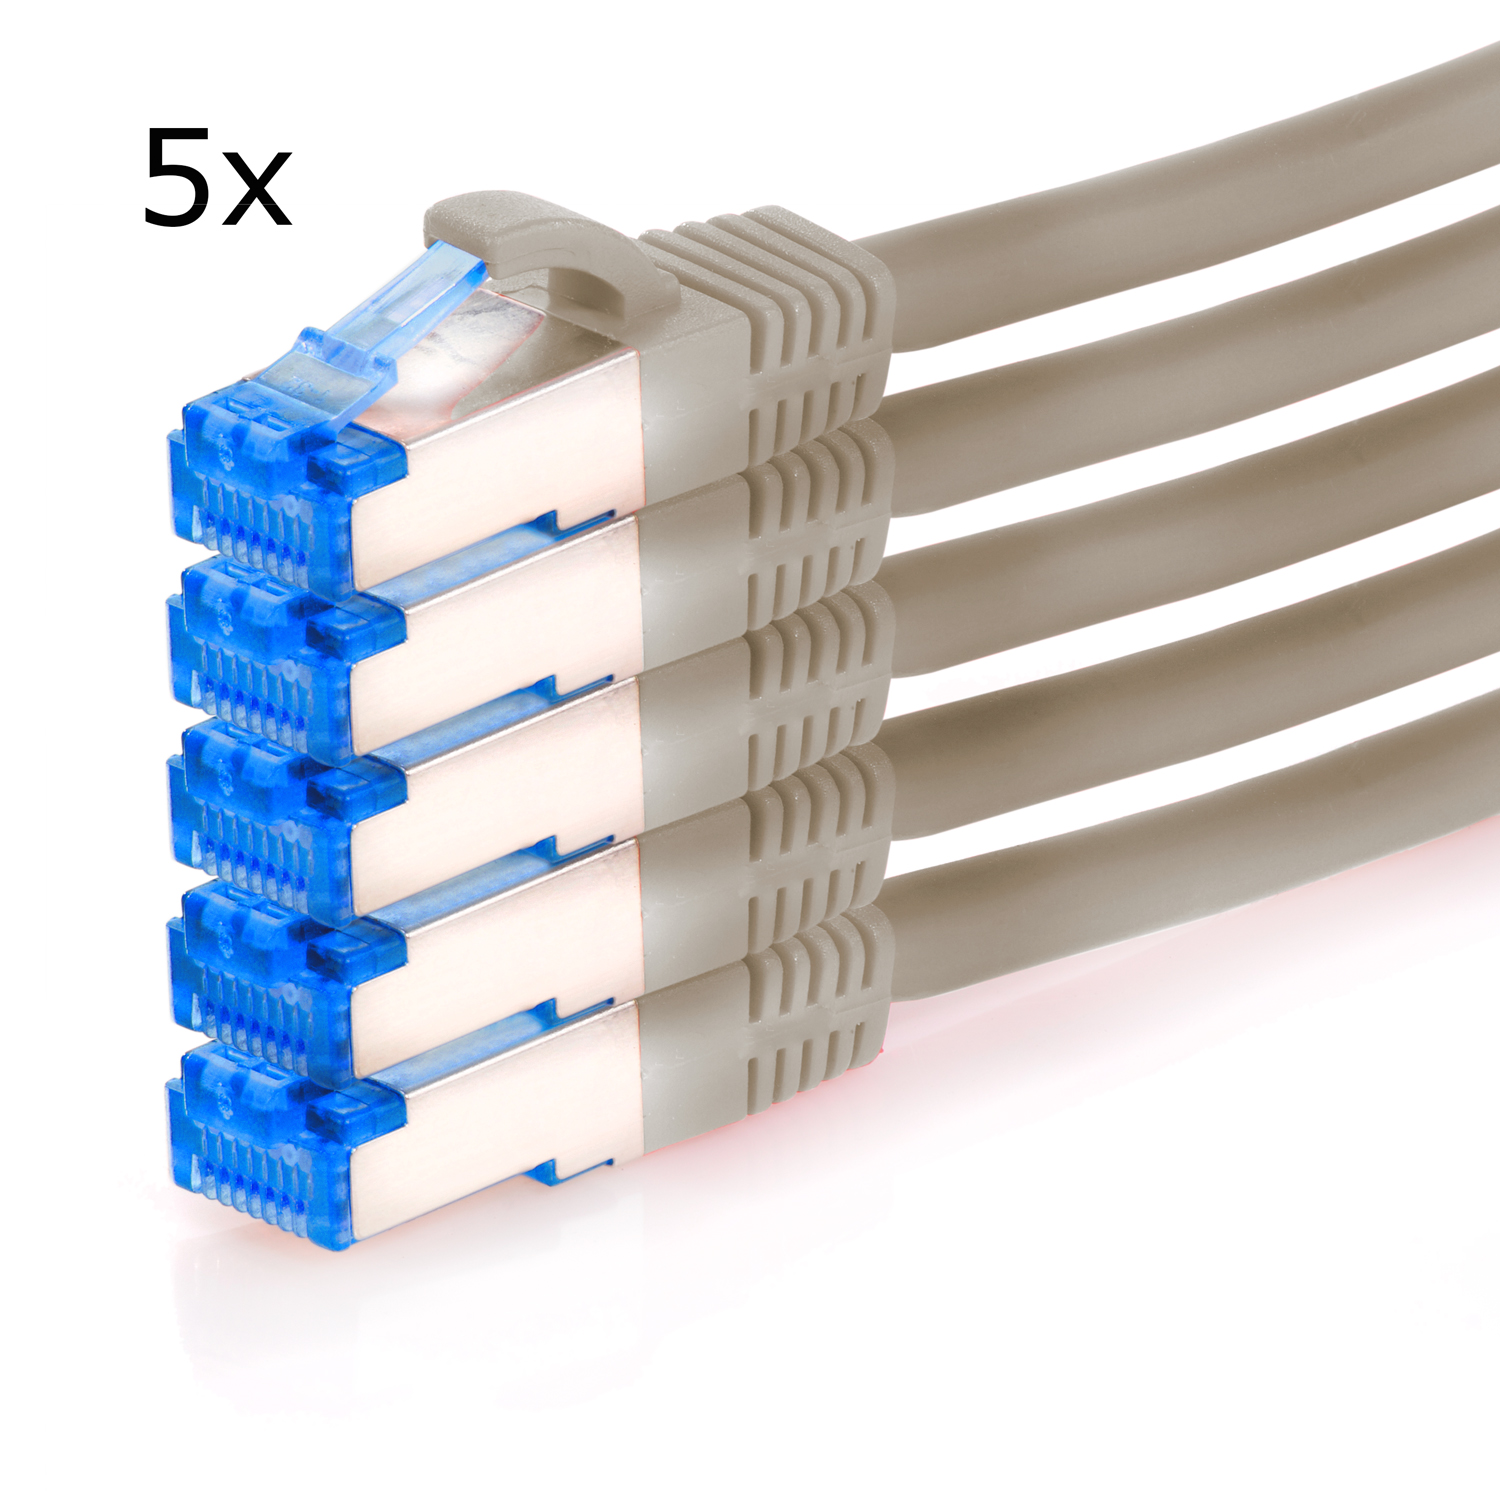 5er Netzwerkkabel, 2m m grau, S/FTP / Netzwerkkabel 10GBit, Patchkabel TPFNET 2 Pack